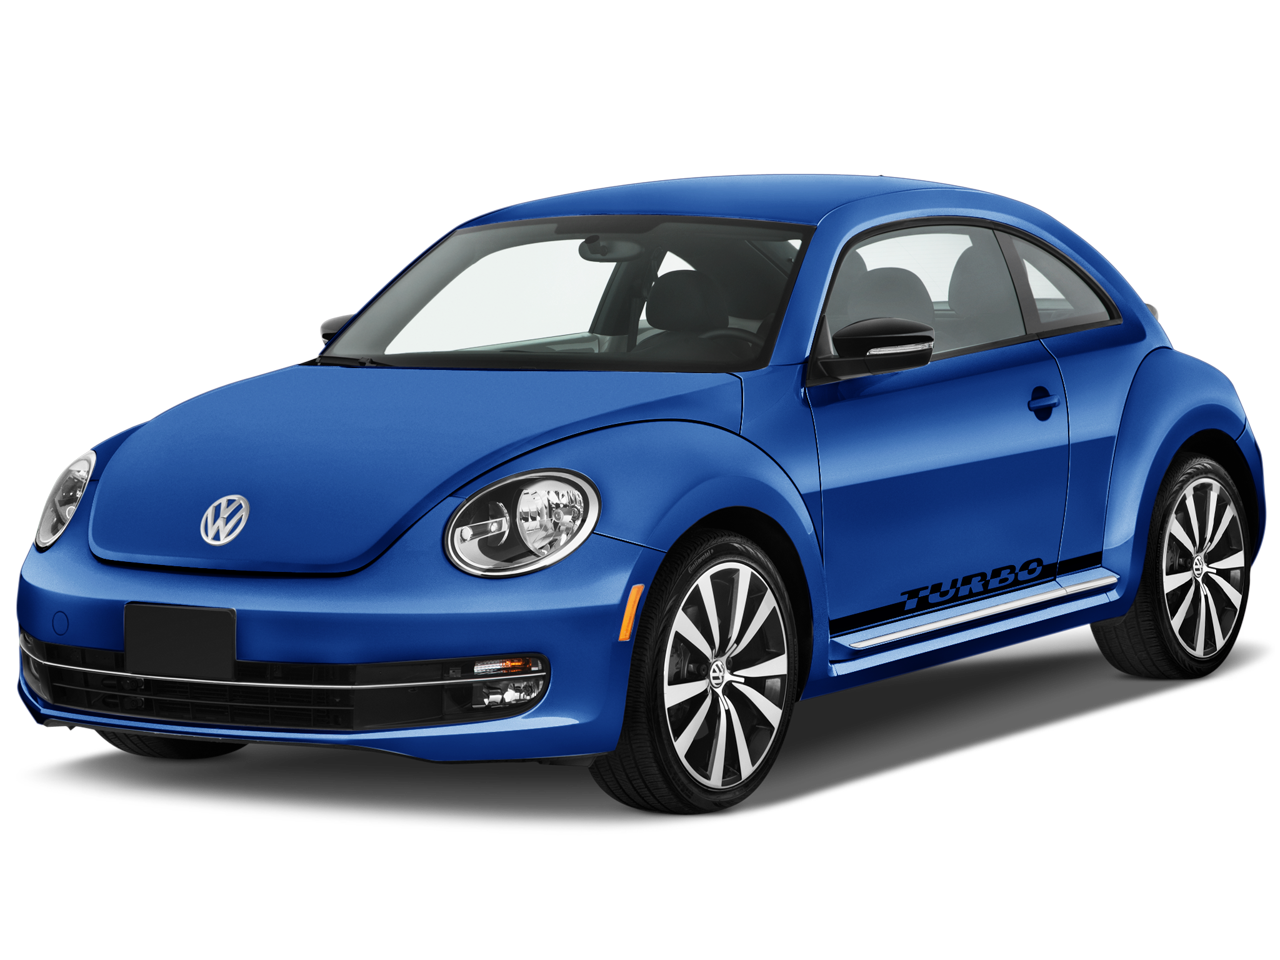 Blue Volkswagen Beetle PNG car image